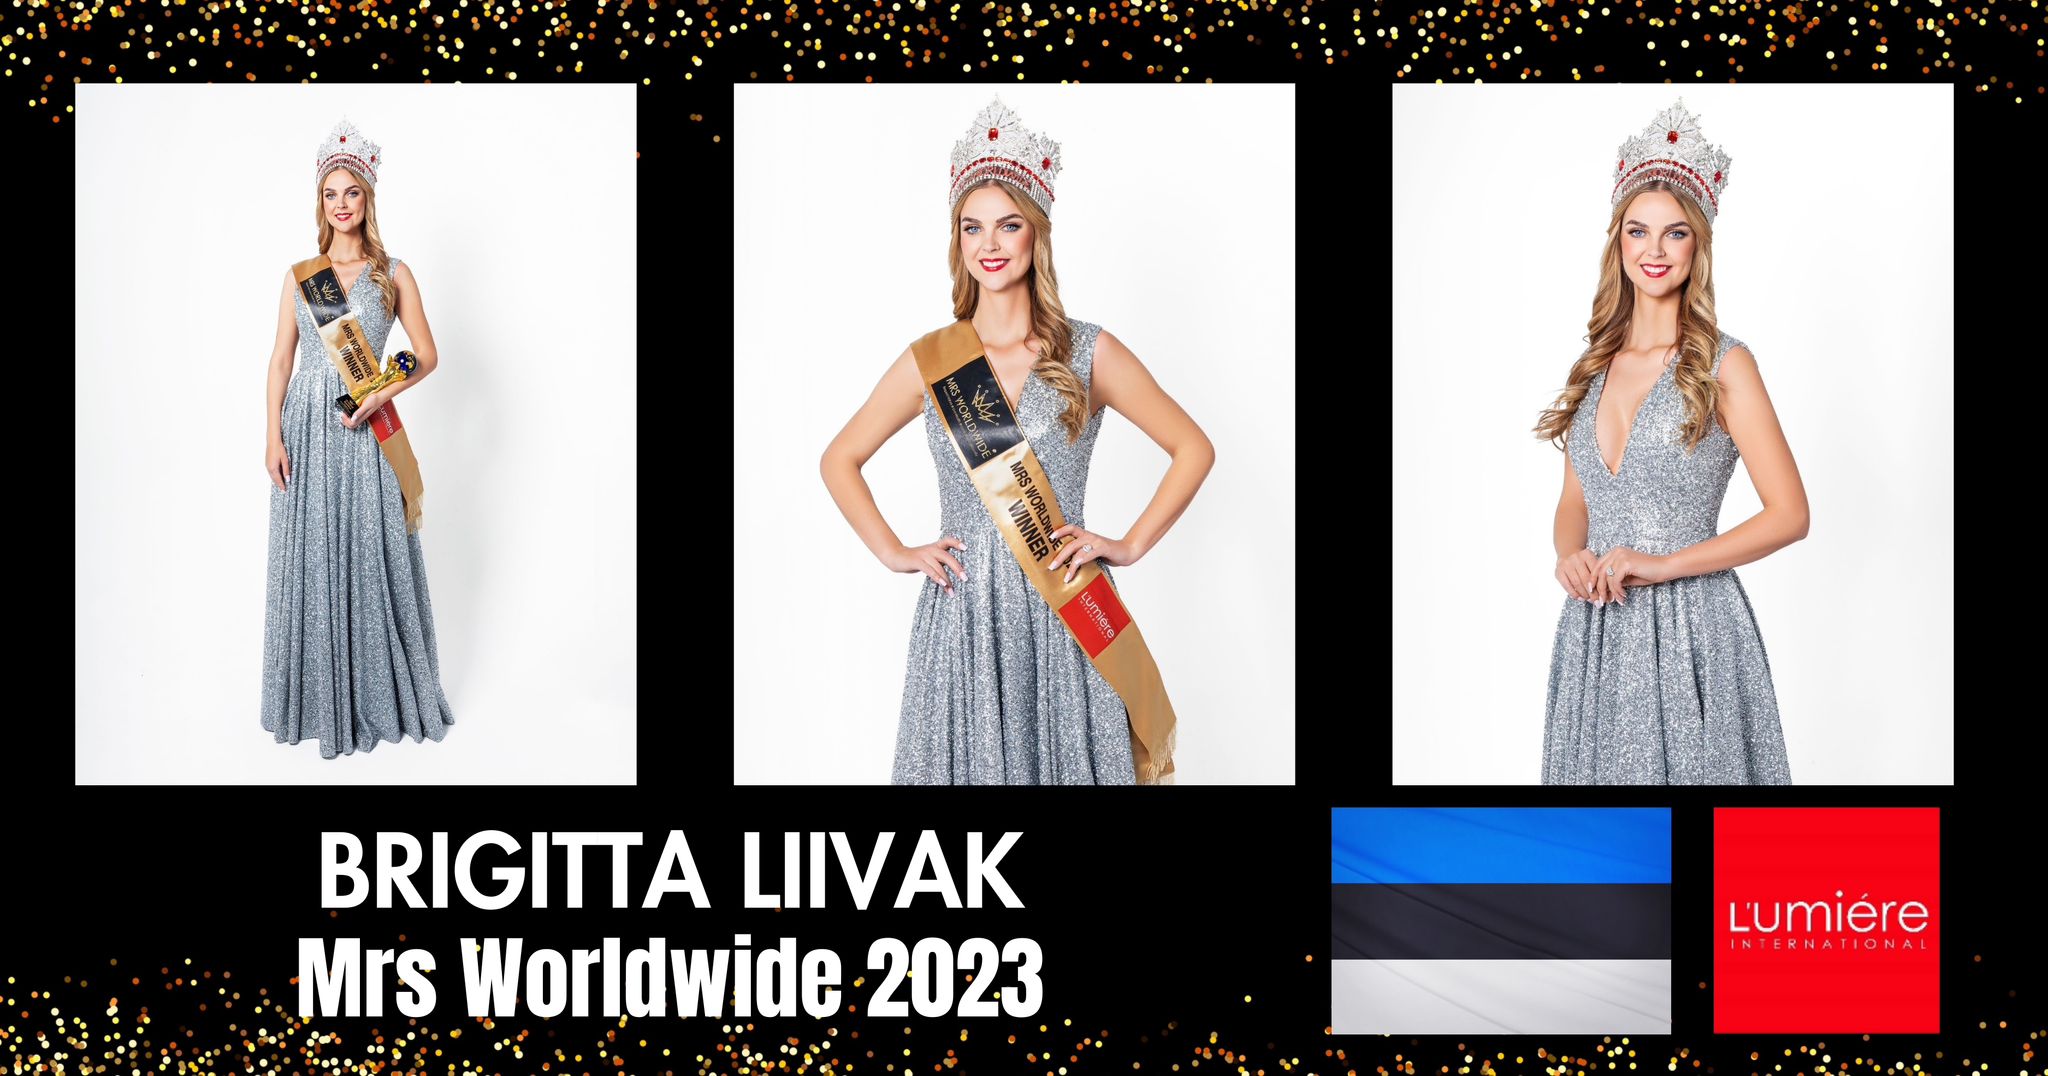 MRS WORLDWIDE 2023 – BRIGITTA LIIVAK